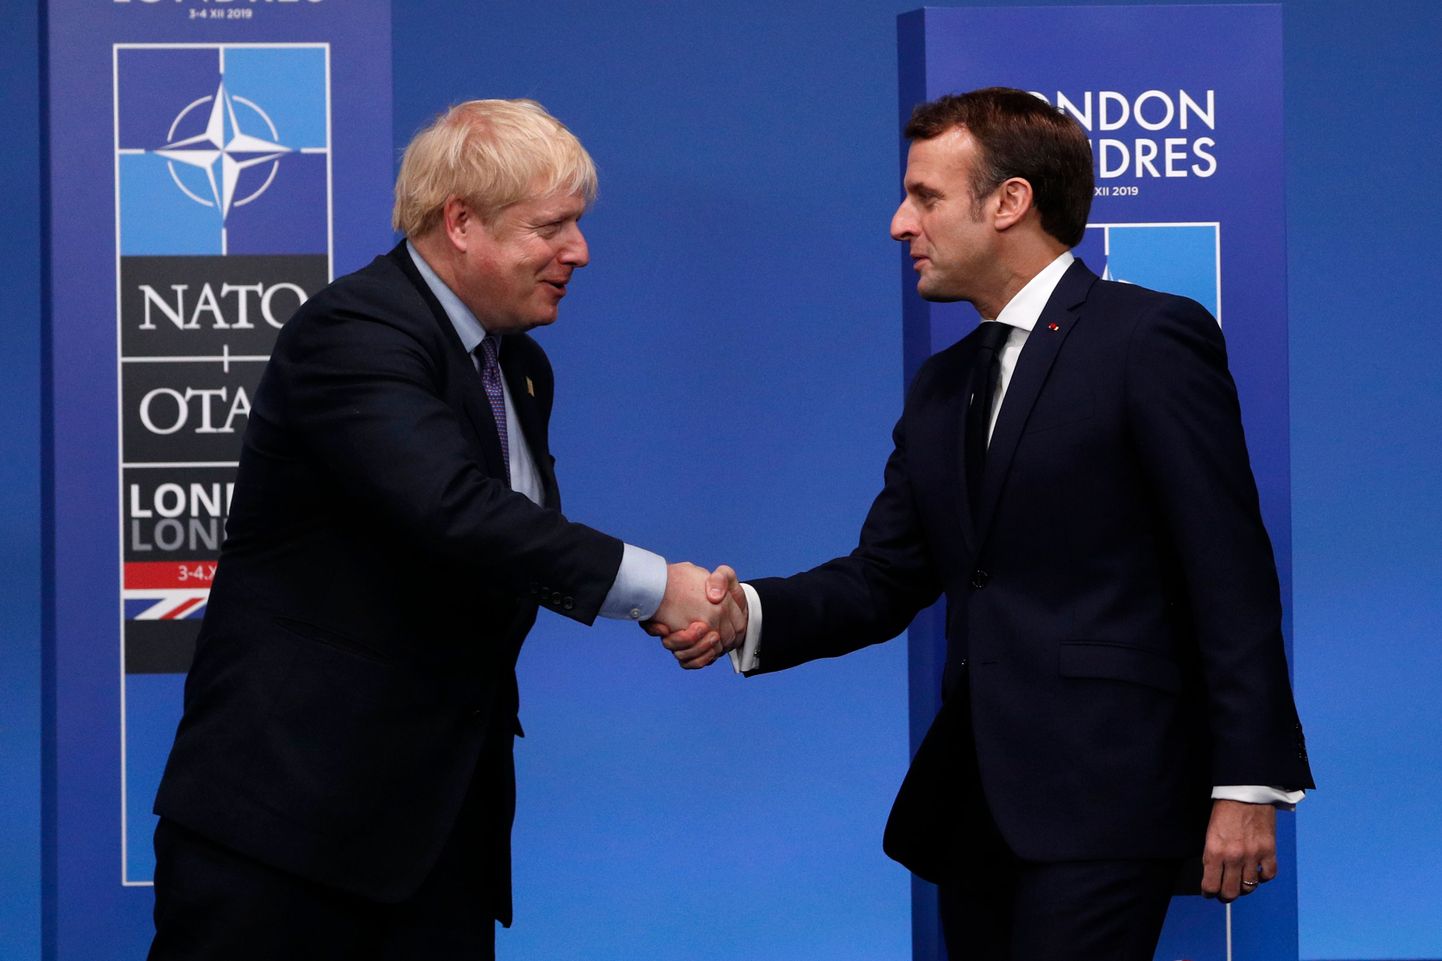 «Minu täielik toetus Boris Johnsonile, tema perekonnale ja kõikidele brittidele sellel raskel ajal. Ma loodan, et ta saab sellest katsumusest kiiresti jagu,» ütles Macron.